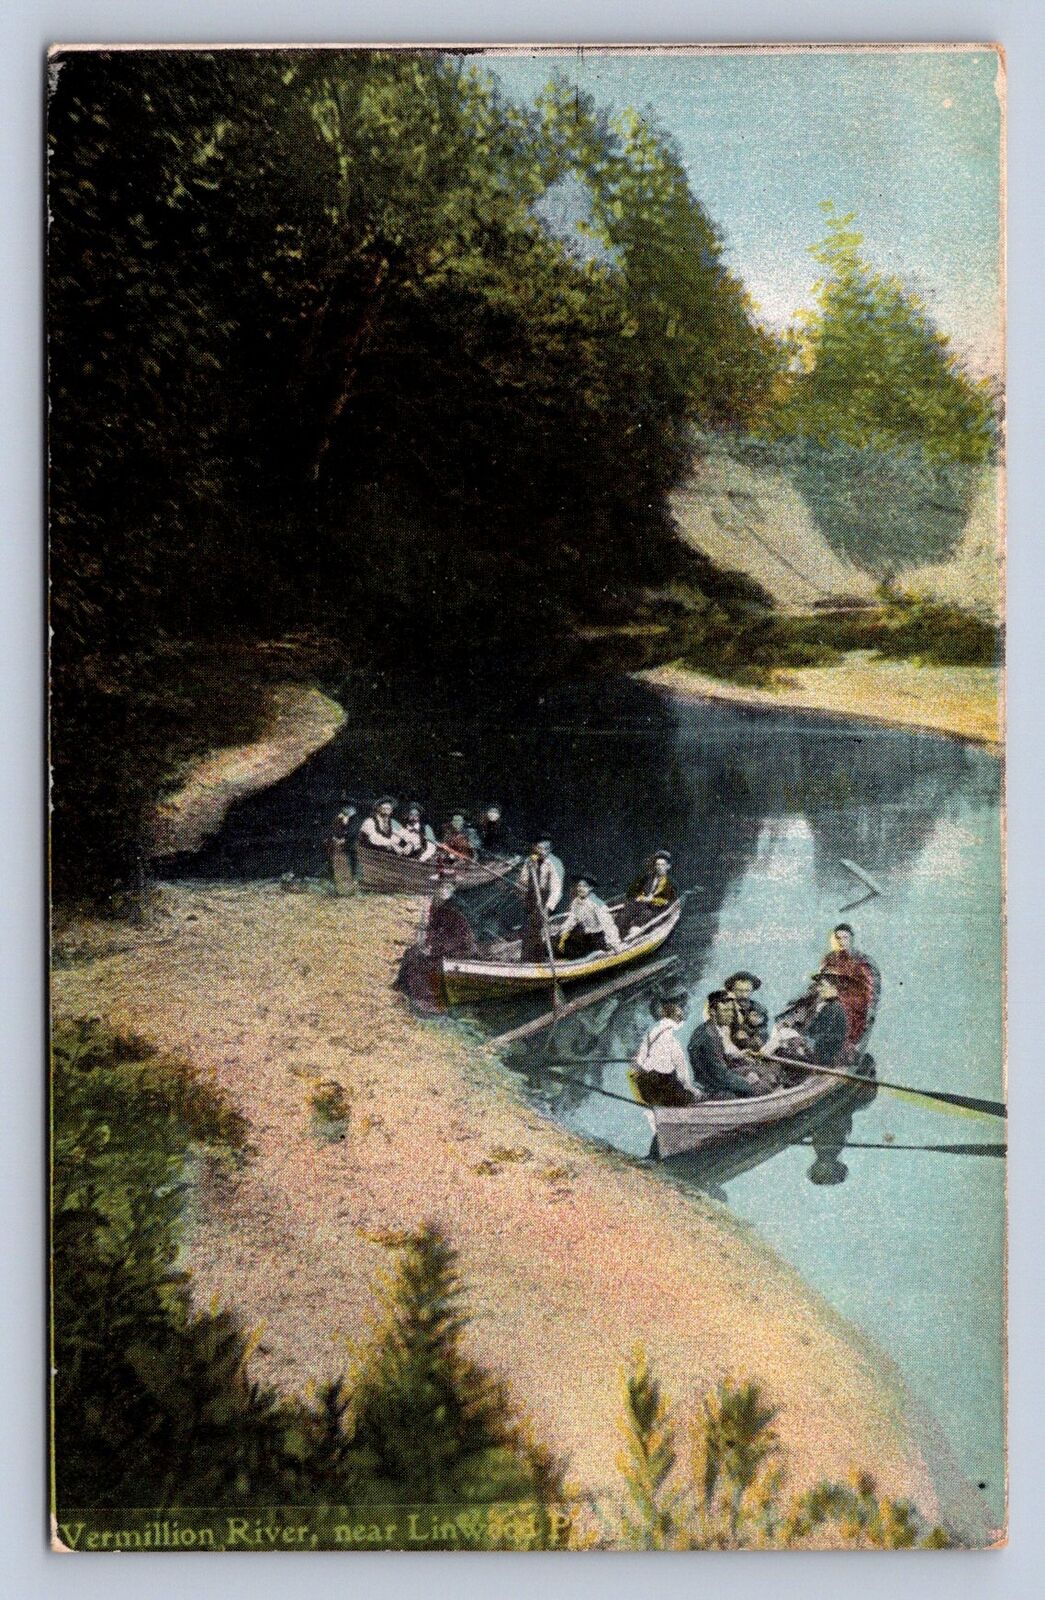 K3/ Vermilion River Ohio Postcard c1910 near Linwood Park Boats 320